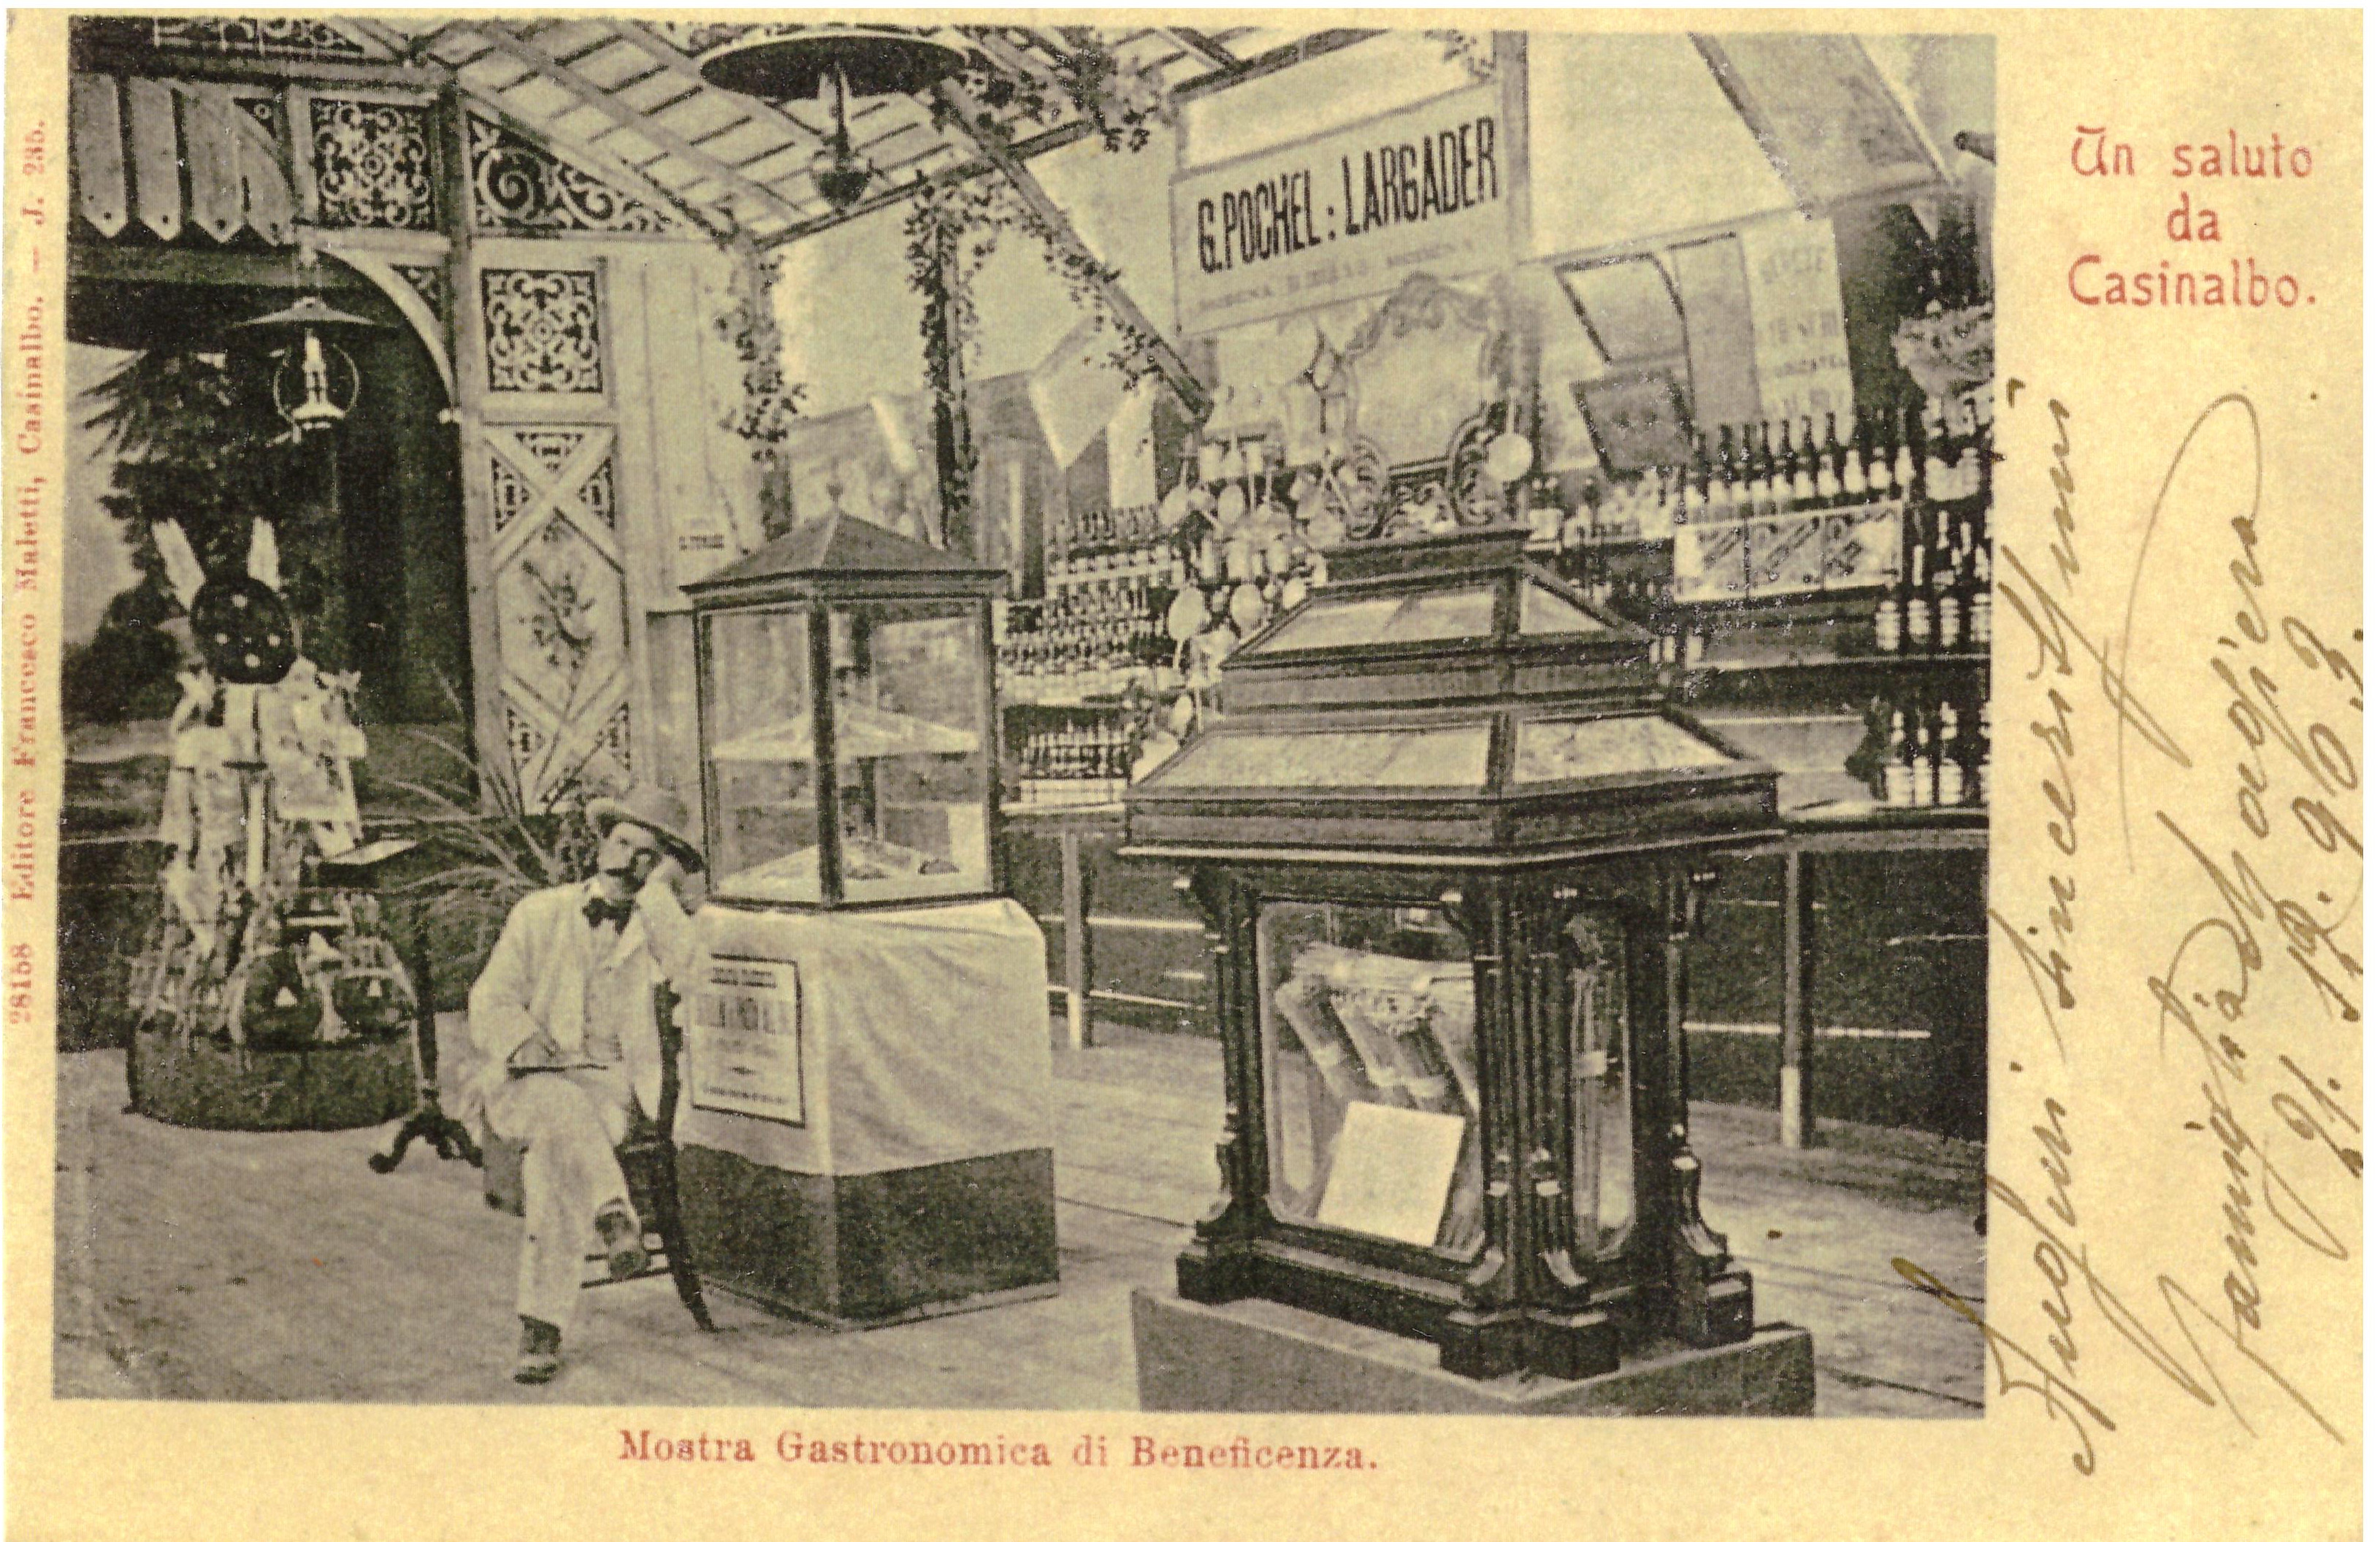 La mostra fu allestita in un padiglione appositamente costruito dal falegname Franchini.